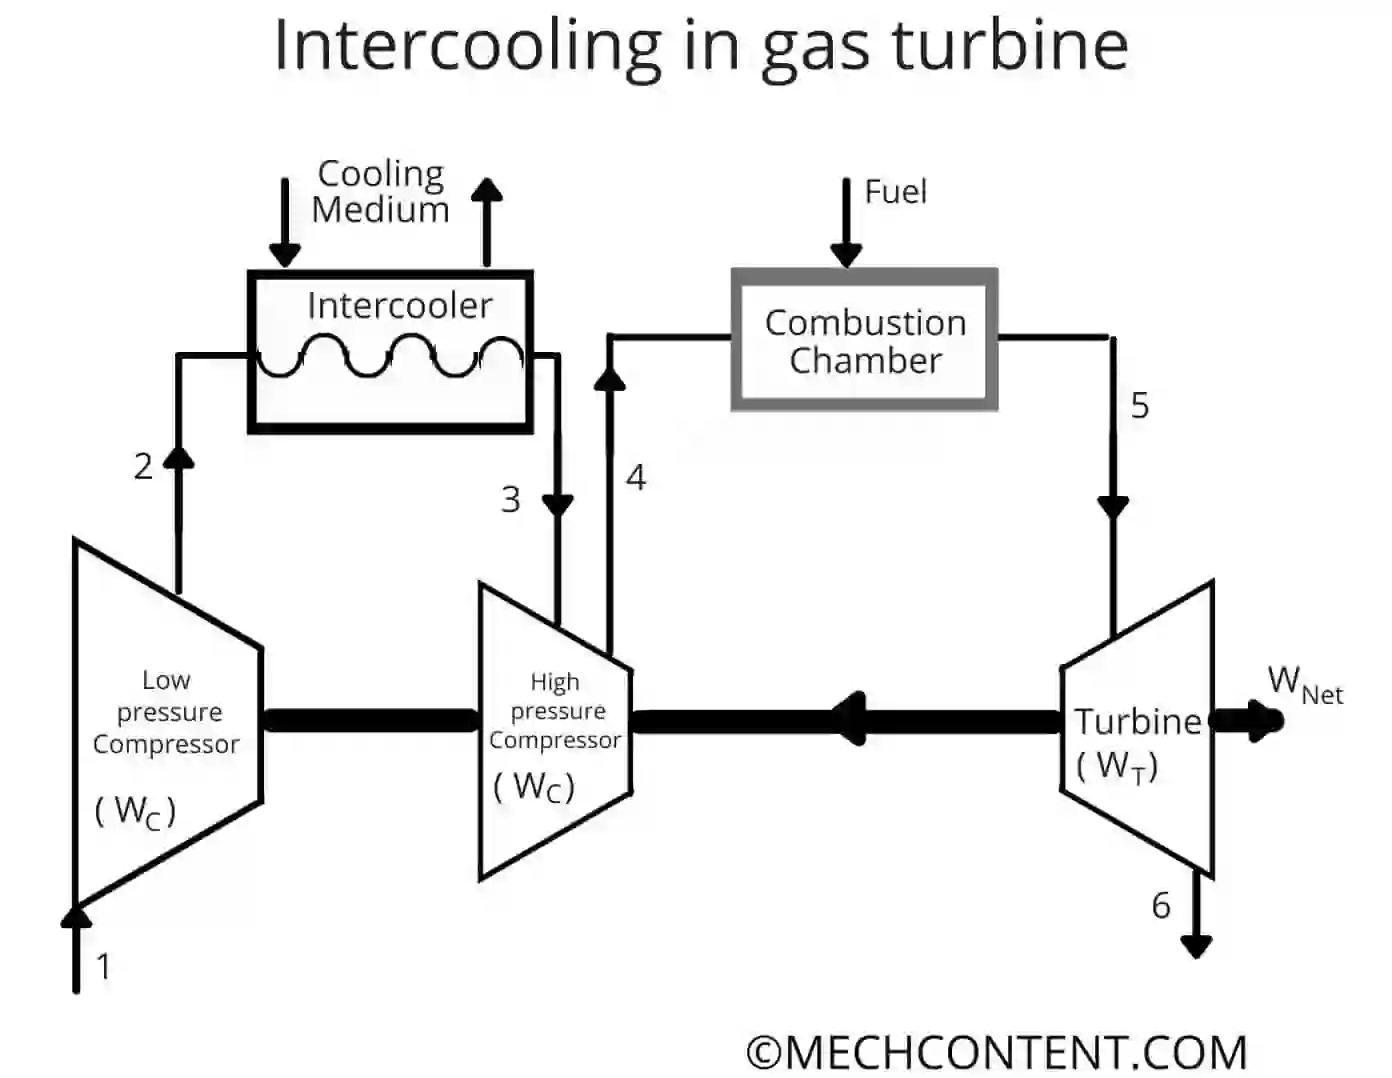 Intercooling in gas turbine